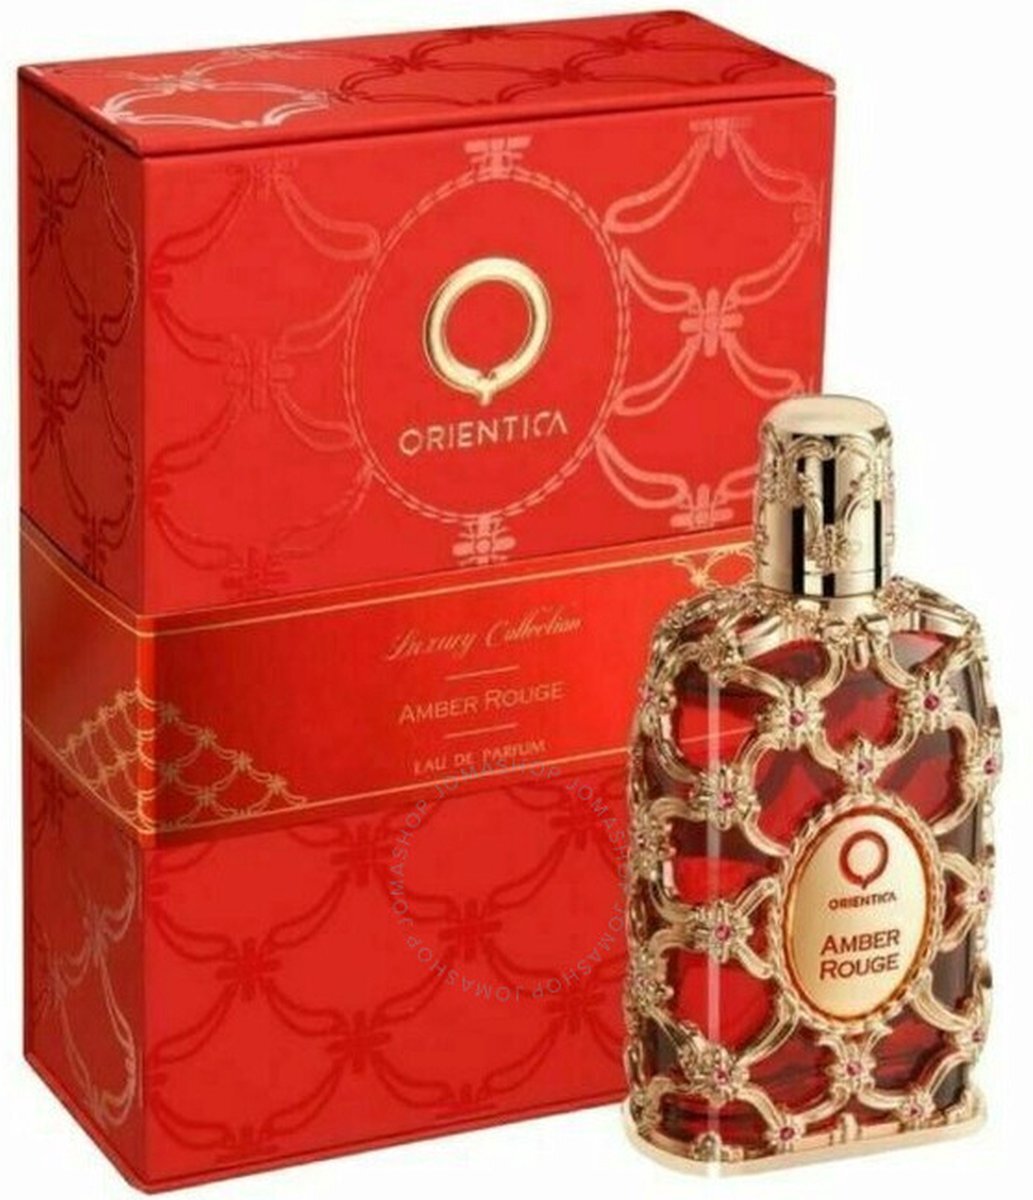 Orientica Amber Rouge eau de parfum / unisex